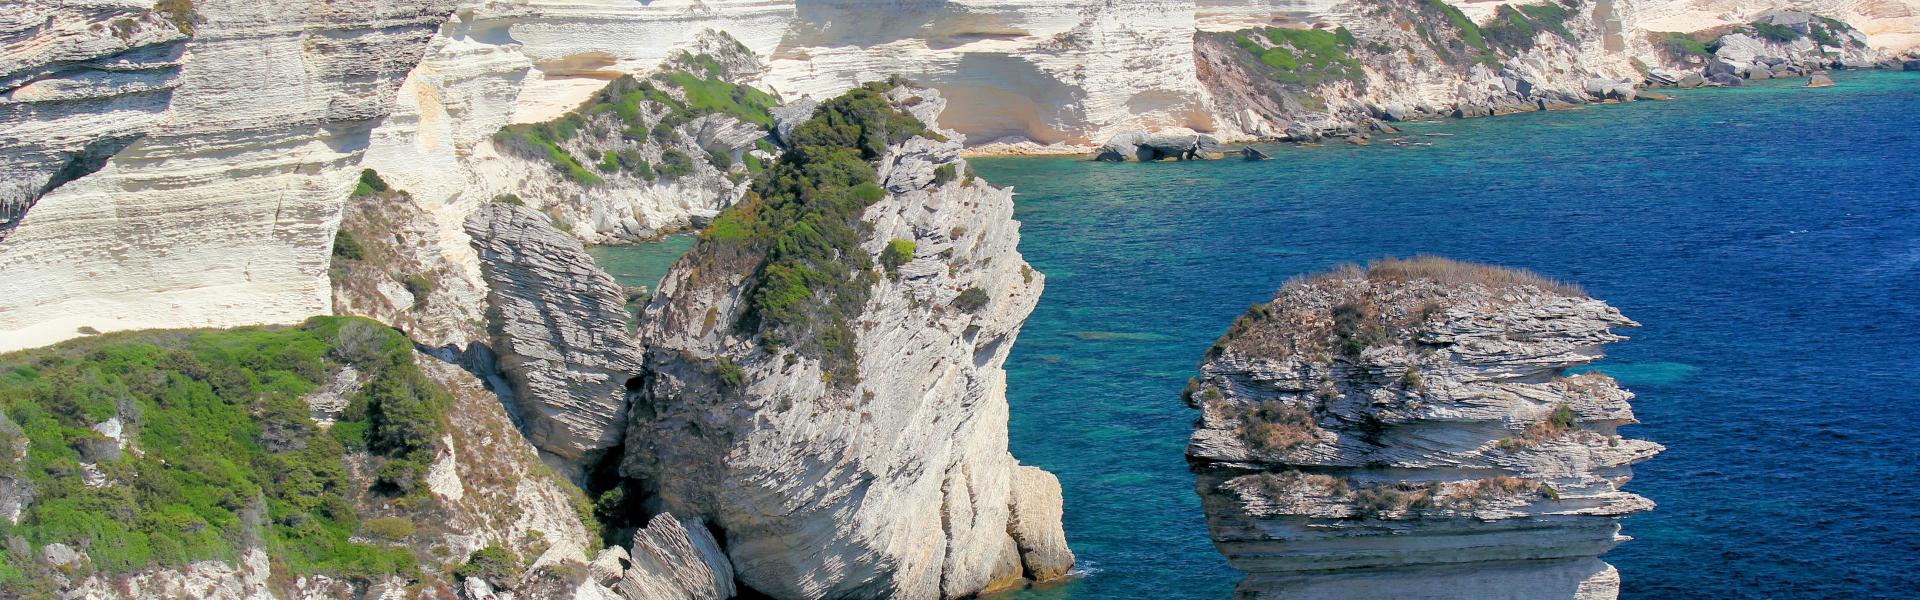 Location de vacances à Sotta - Corse-du-Sud - amivac